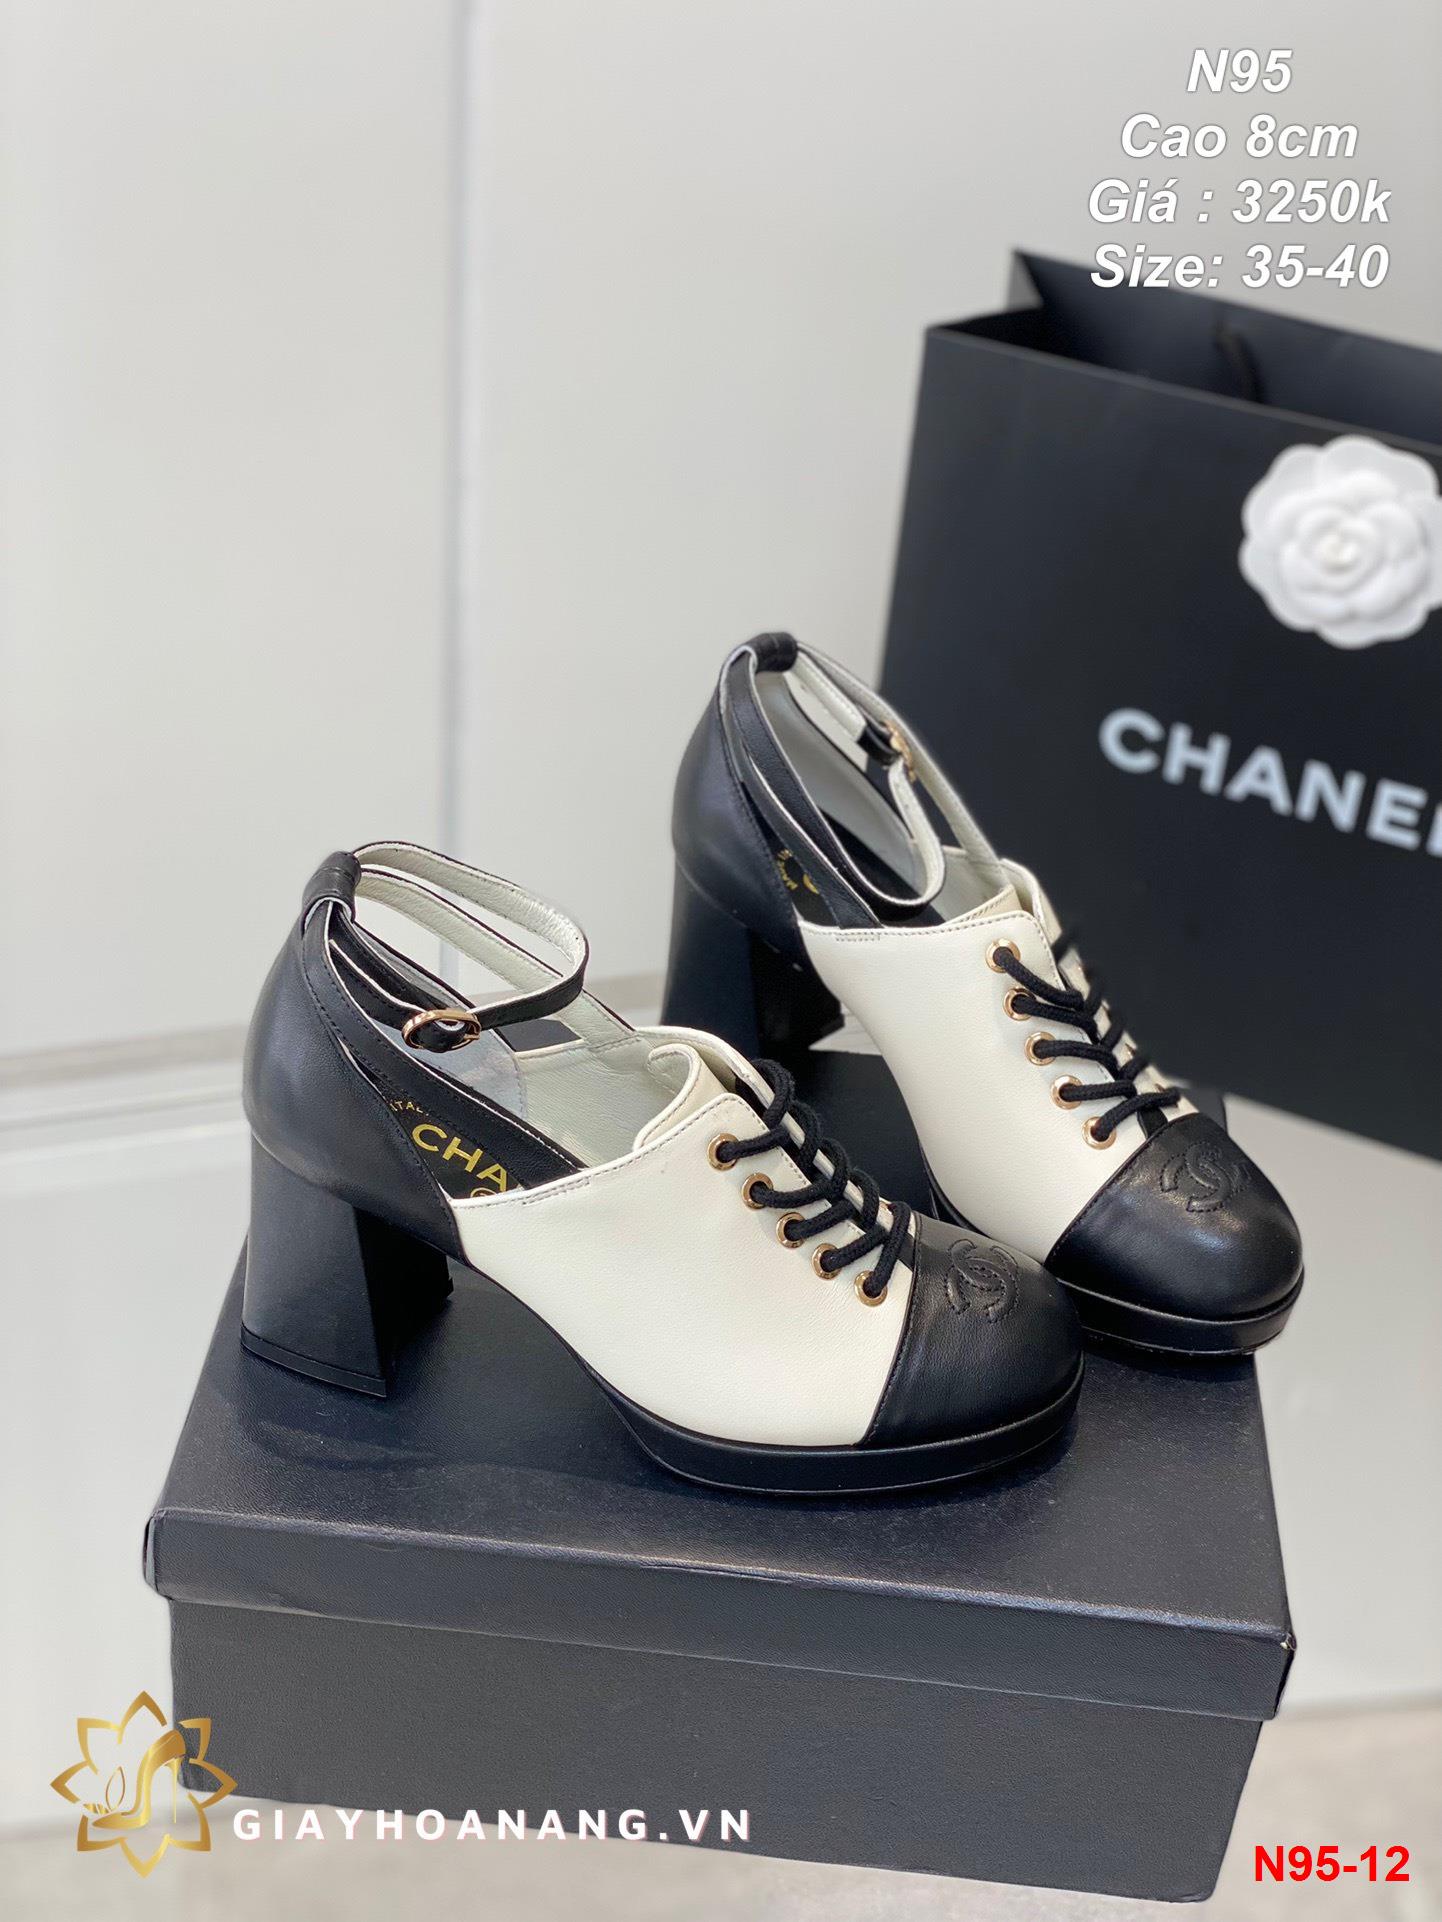 N95-12 Chanel giày cao 8cm siêu cấp